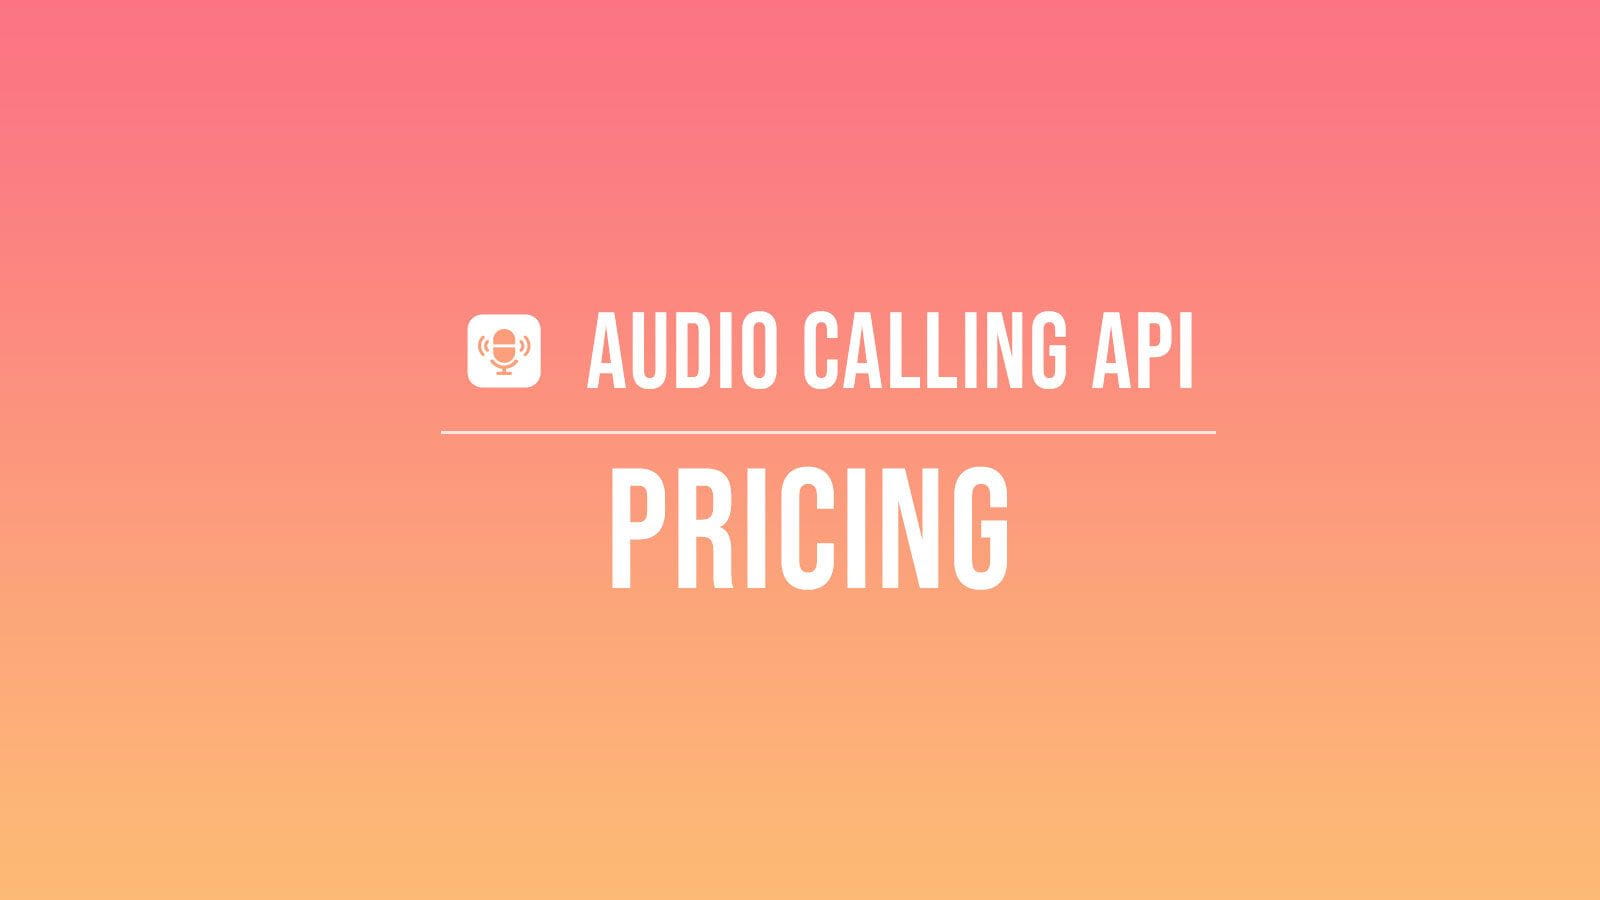 Audio Calling API Pricing